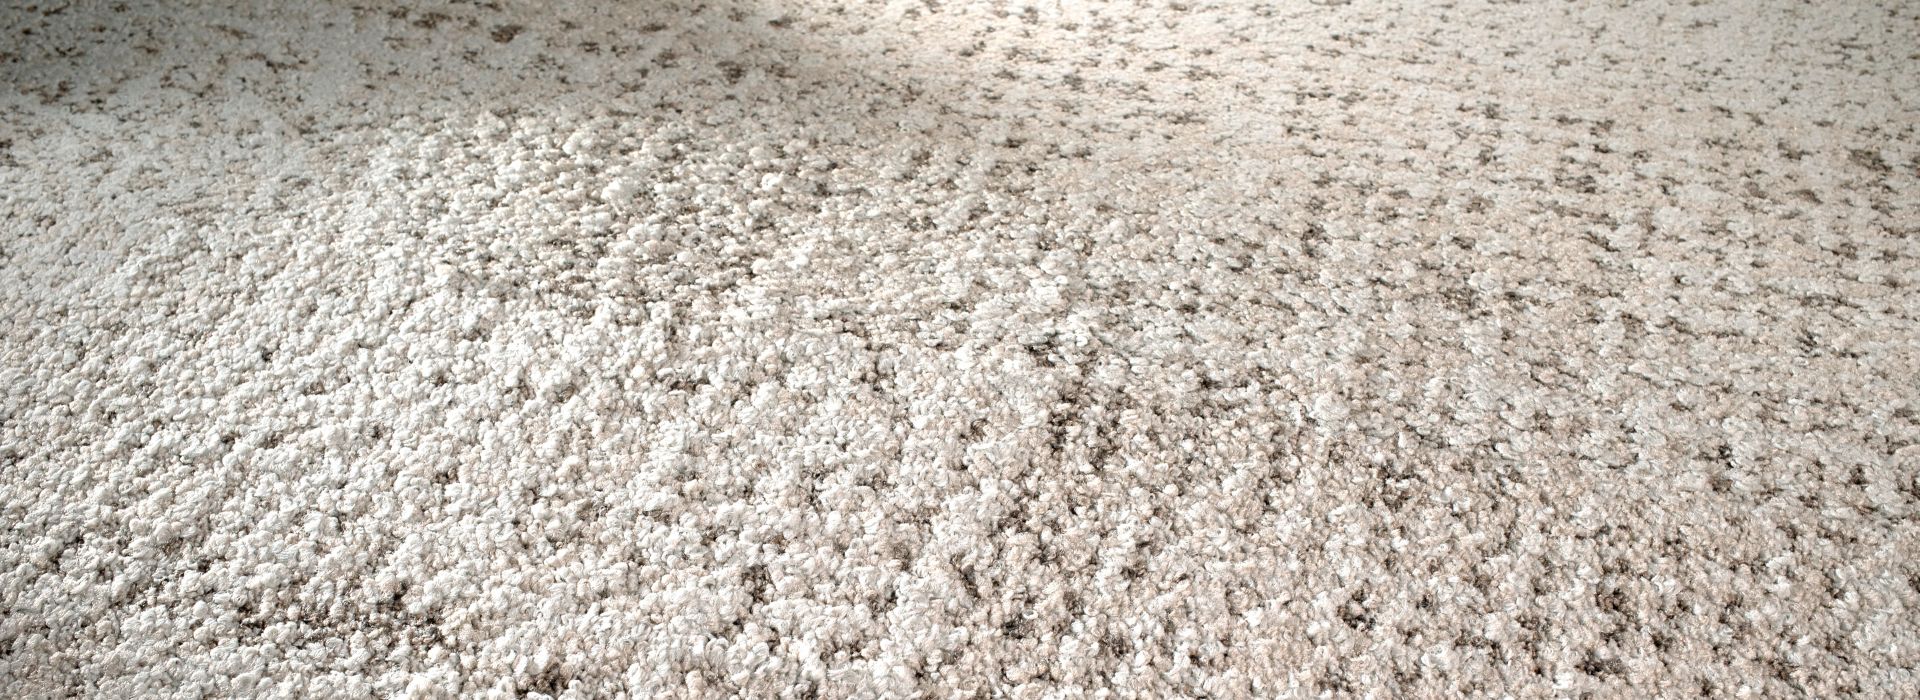 FLOR It's Snow Problem carpet tile close up